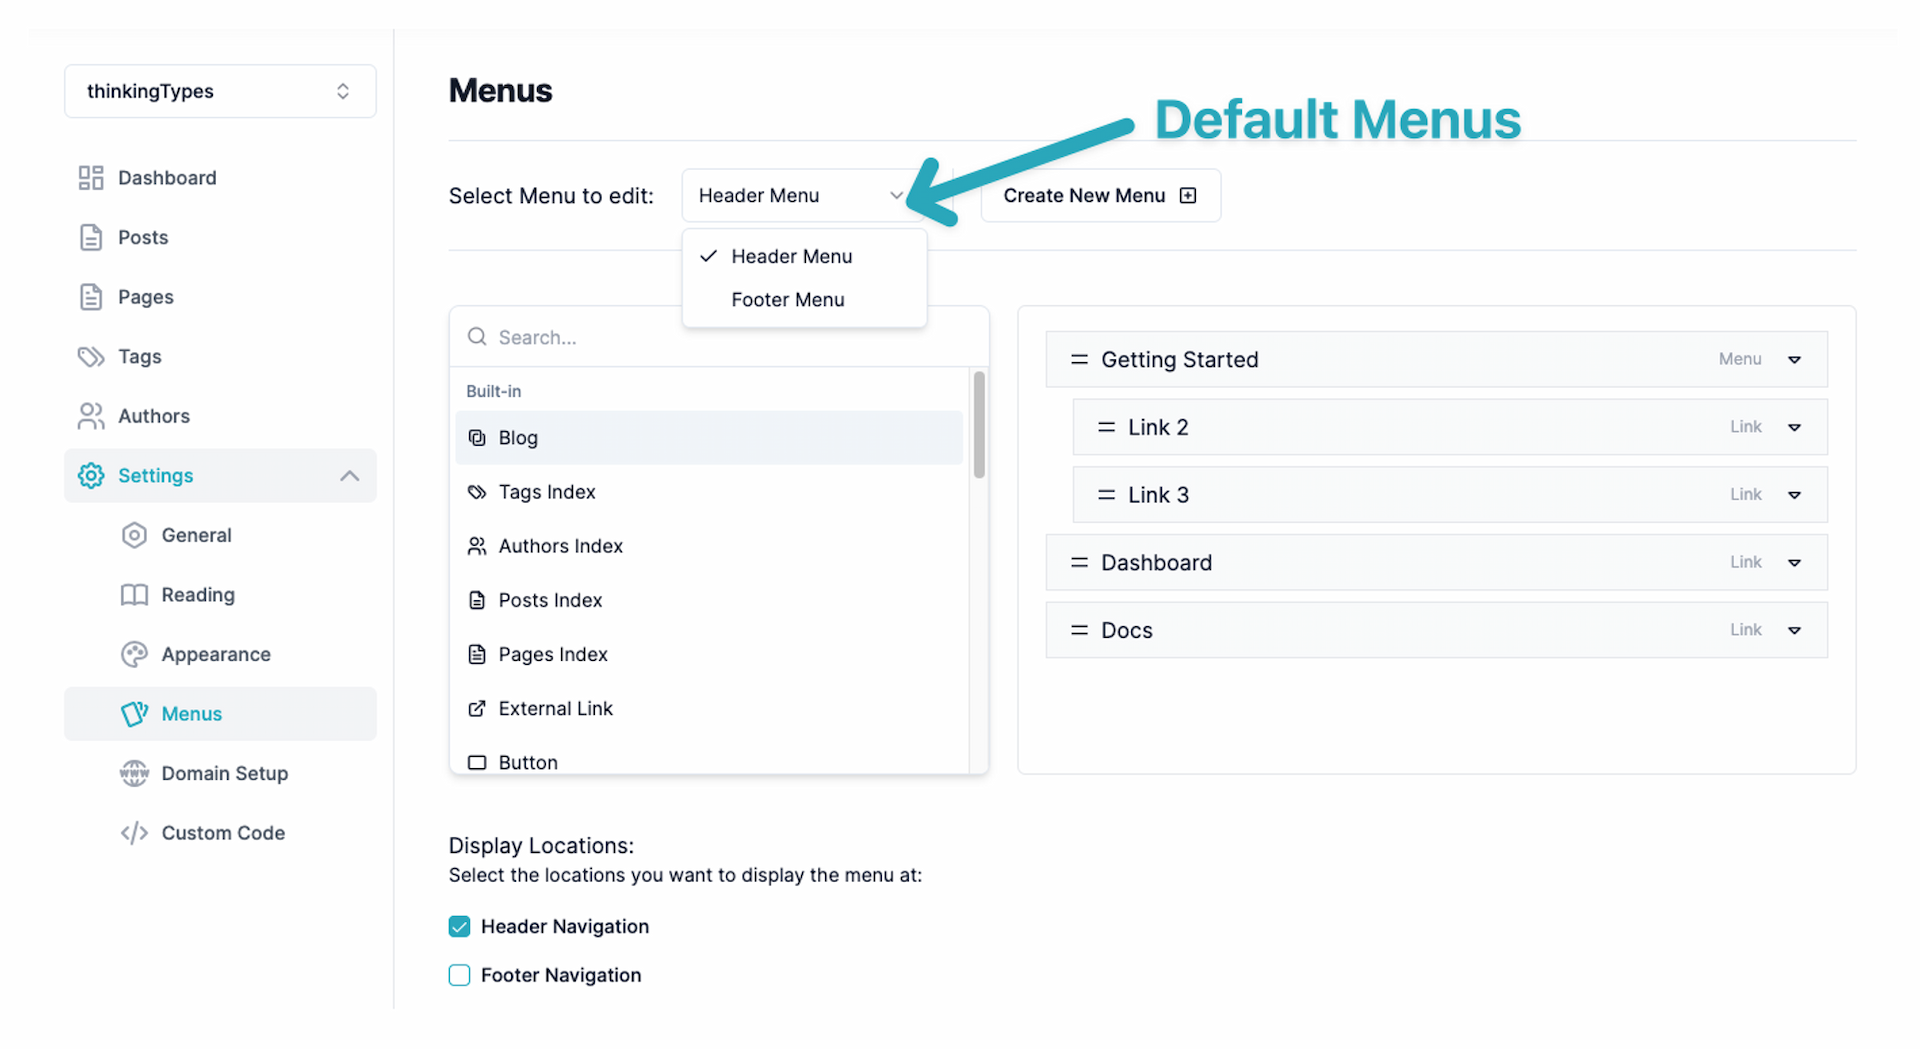 Default menus under Settings → Menus